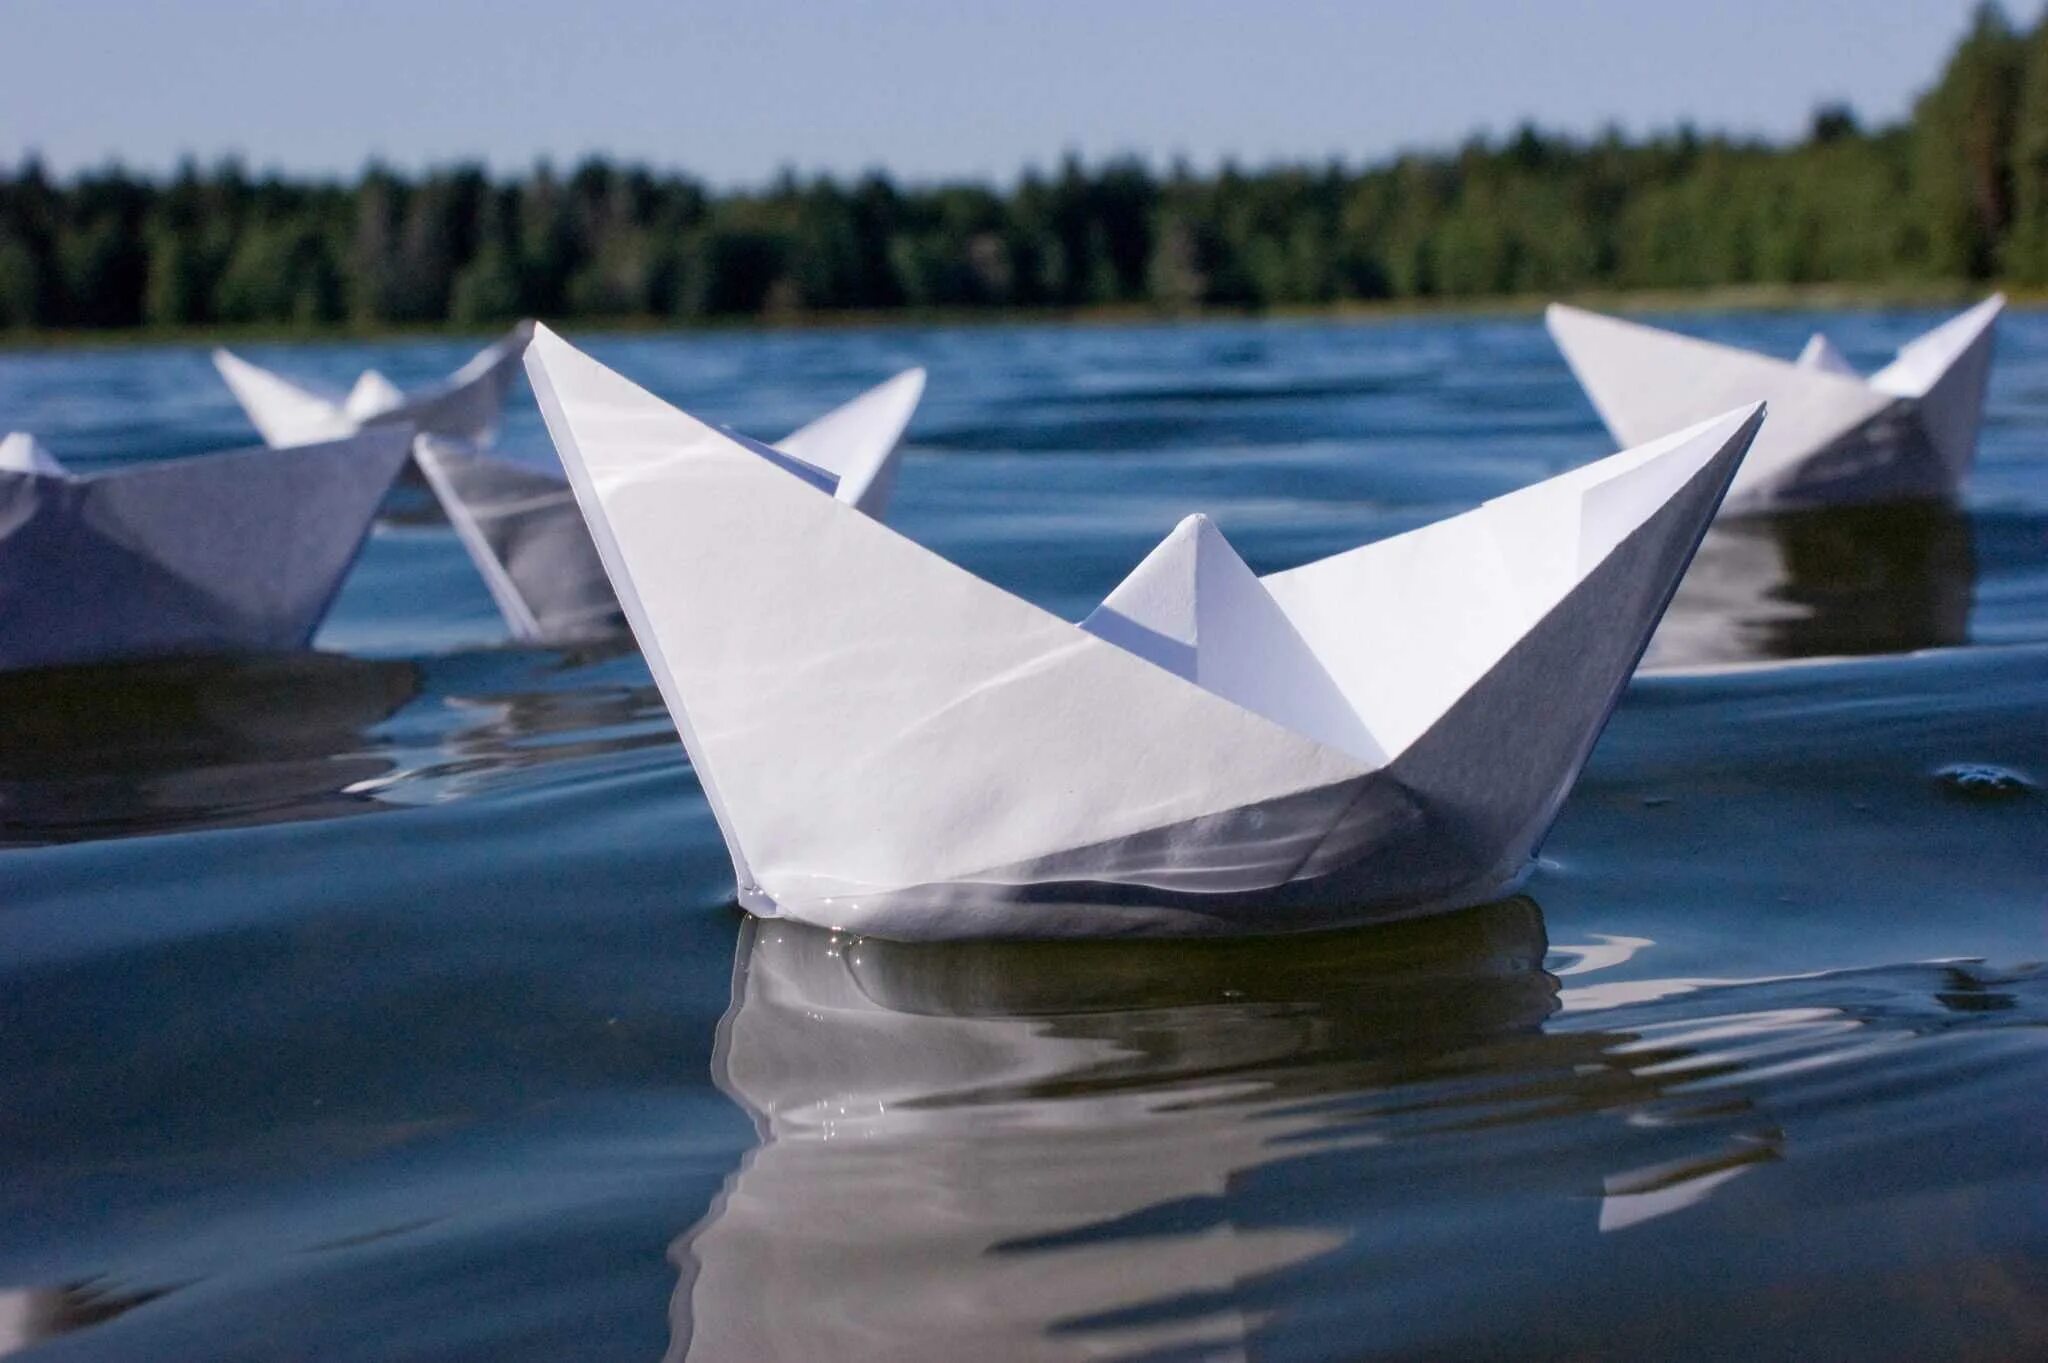 Кораблик из бумаги я по ручью пустил. Бумажный кораблик. Бумажный корабль. Бумажный кораблик на воде. Маленький бумажный кораблик.